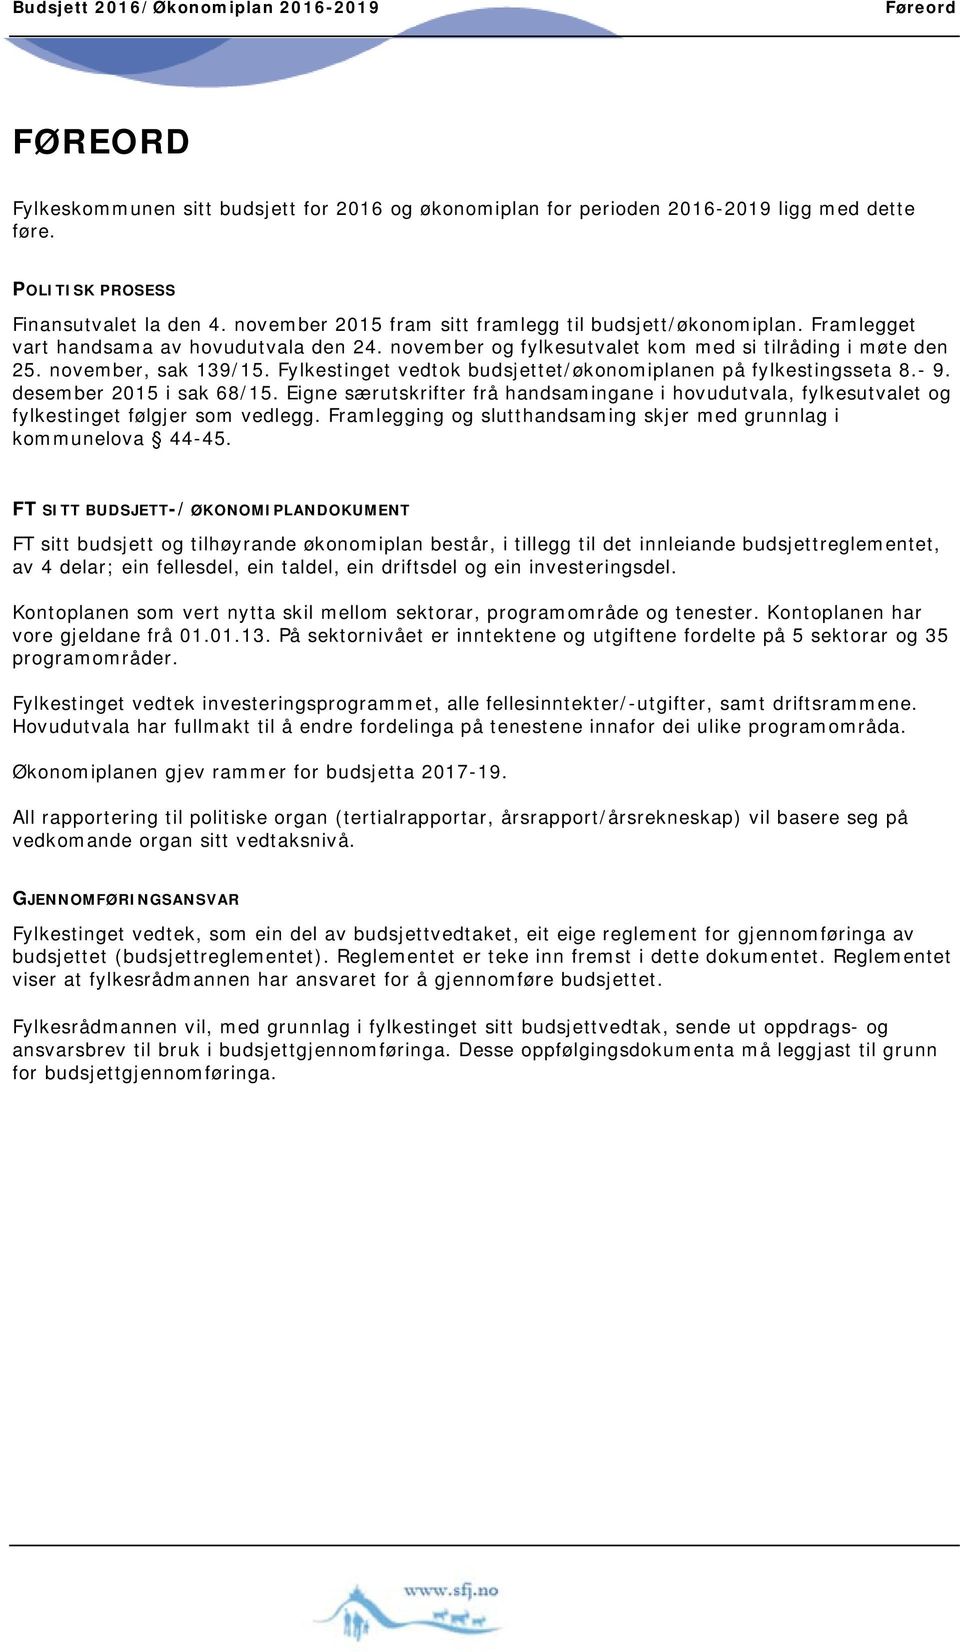 Fylkestinget vedtok budsjettet/økonomiplanen på fylkestingsseta 8.- 9. desember 2015 i sak 68/15.